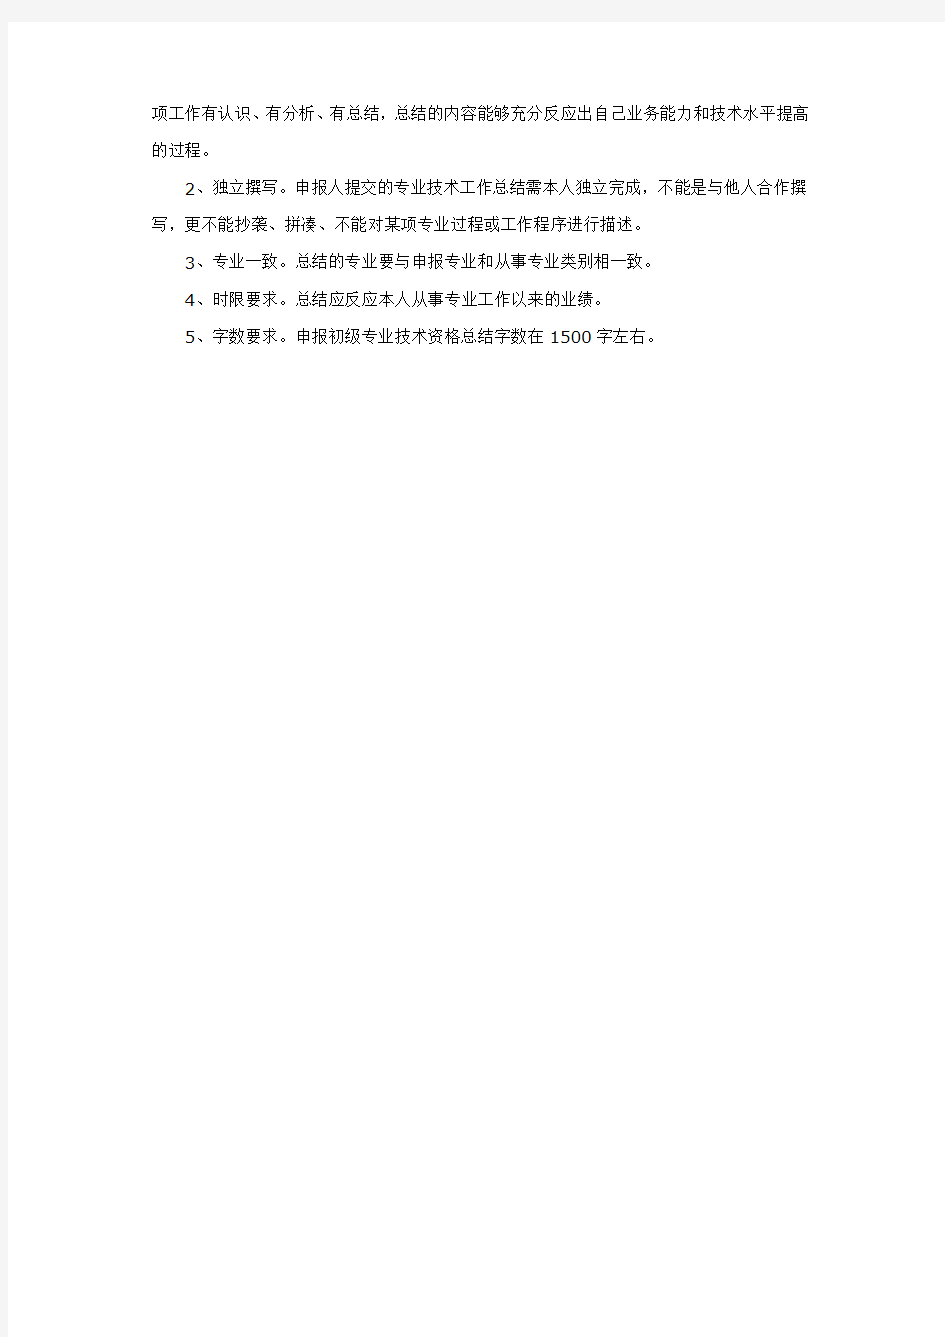 北京初级职称评审条件及流程